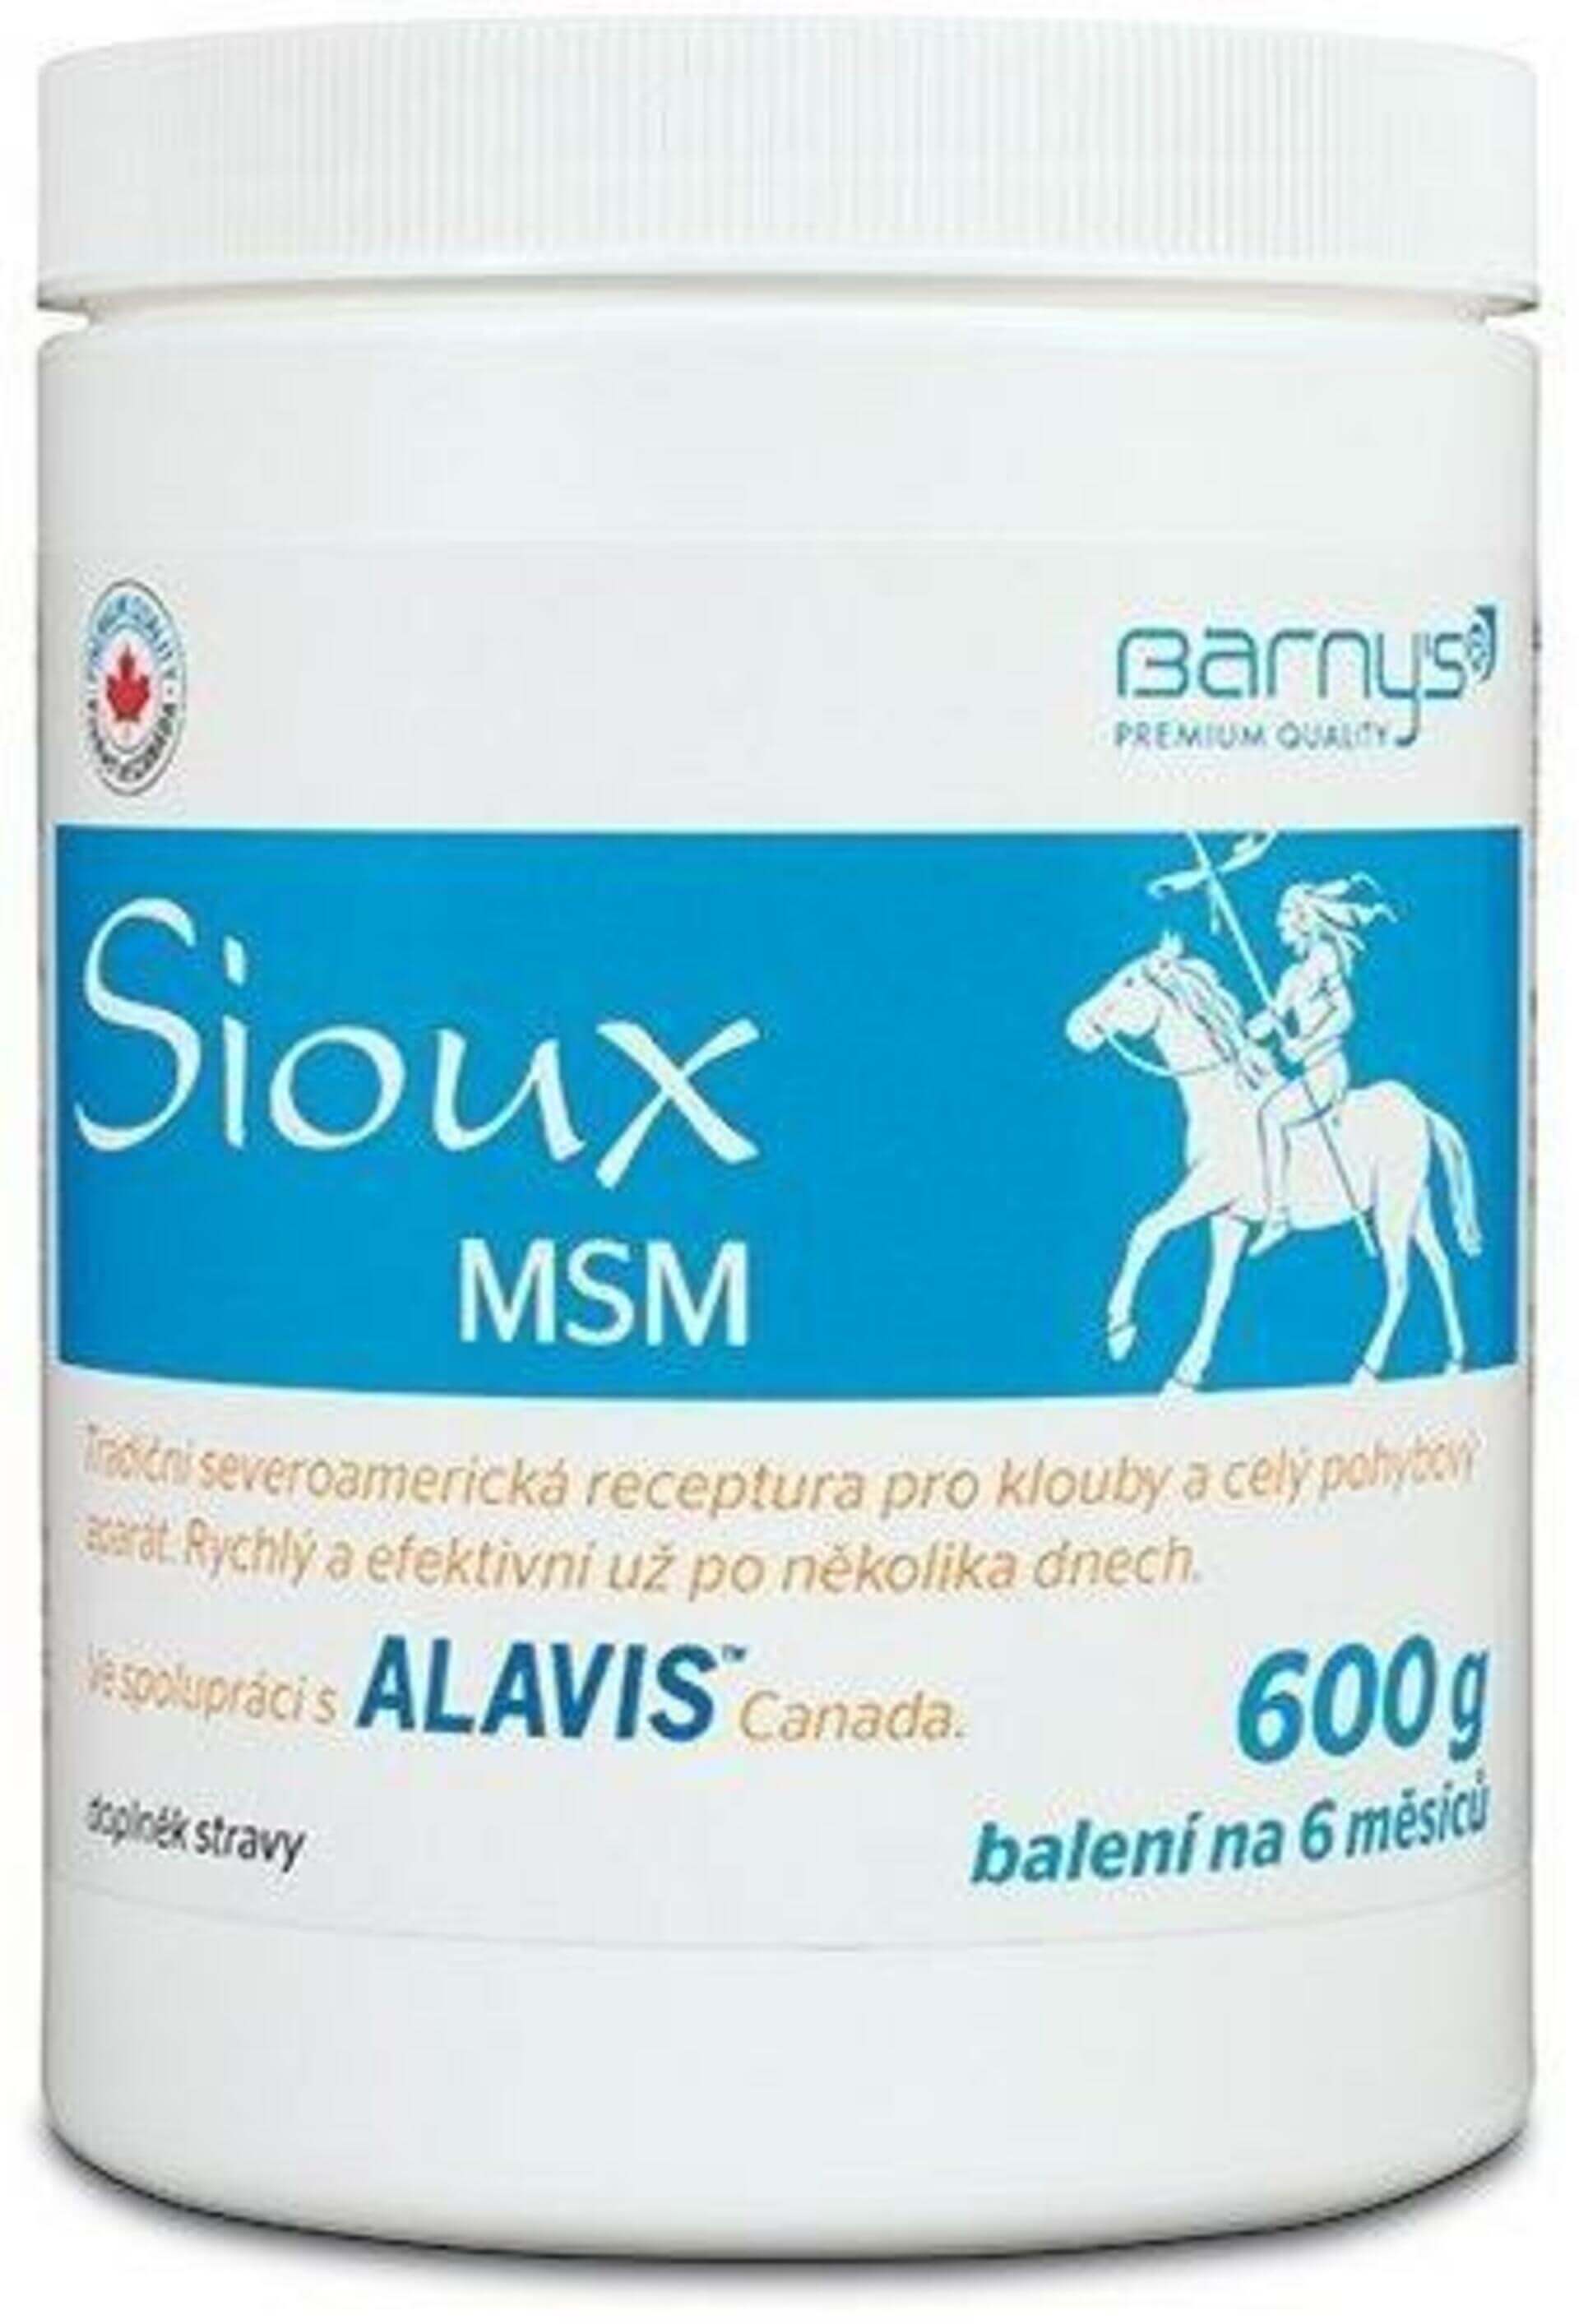 E-shop Barny Sioux MSM 600 g